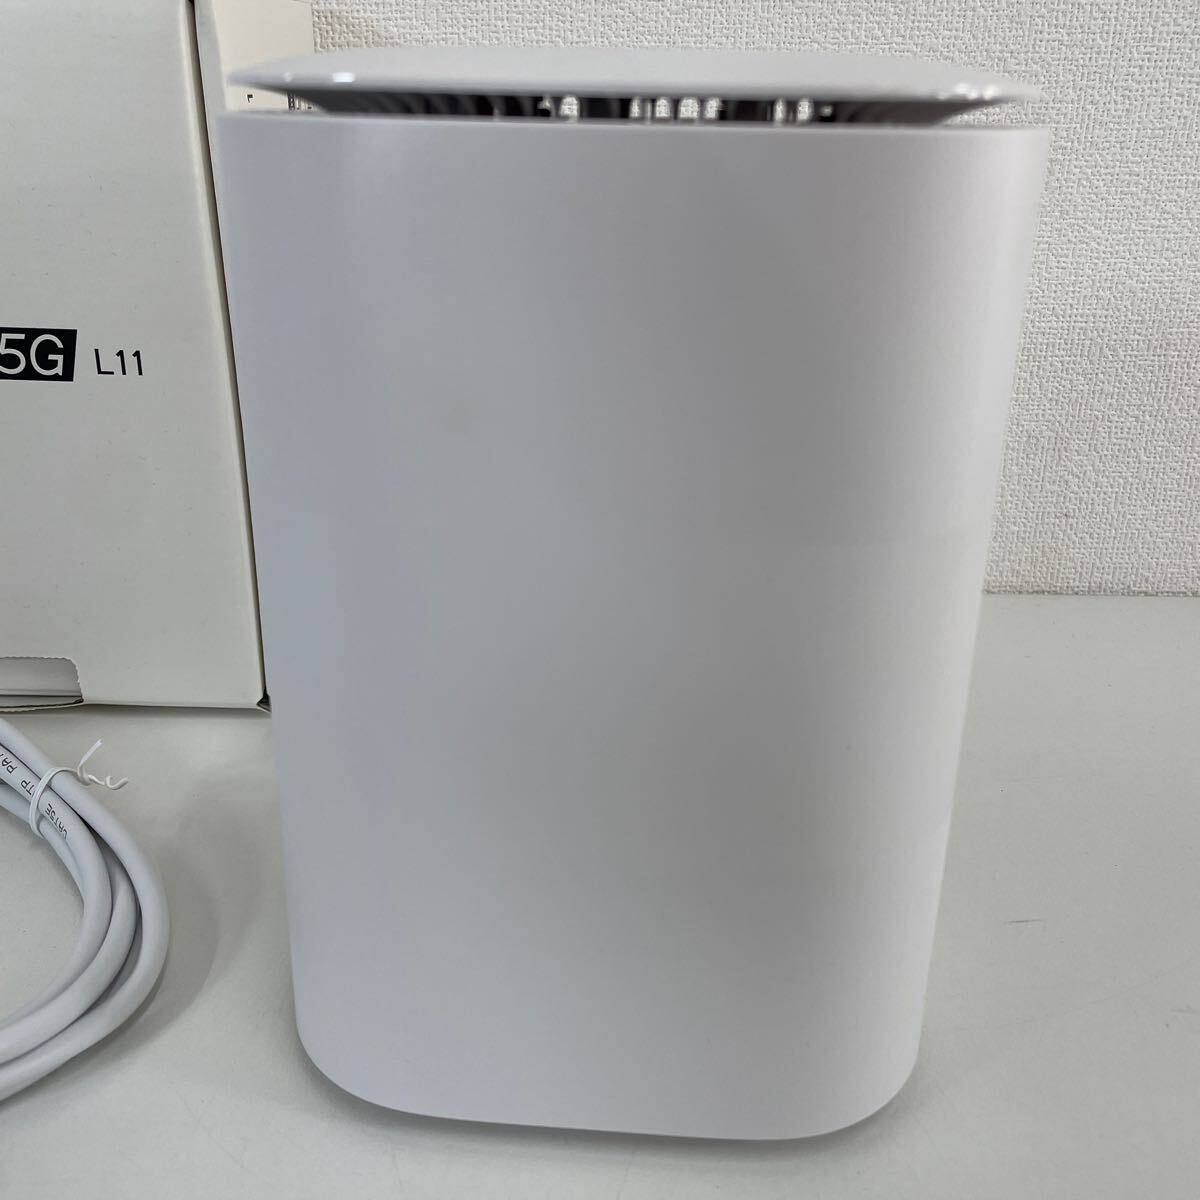 Z* KDDI Speed Wi-Fi HOME 5G L11 белый Home маршрутизатор царапина загрязнения есть 